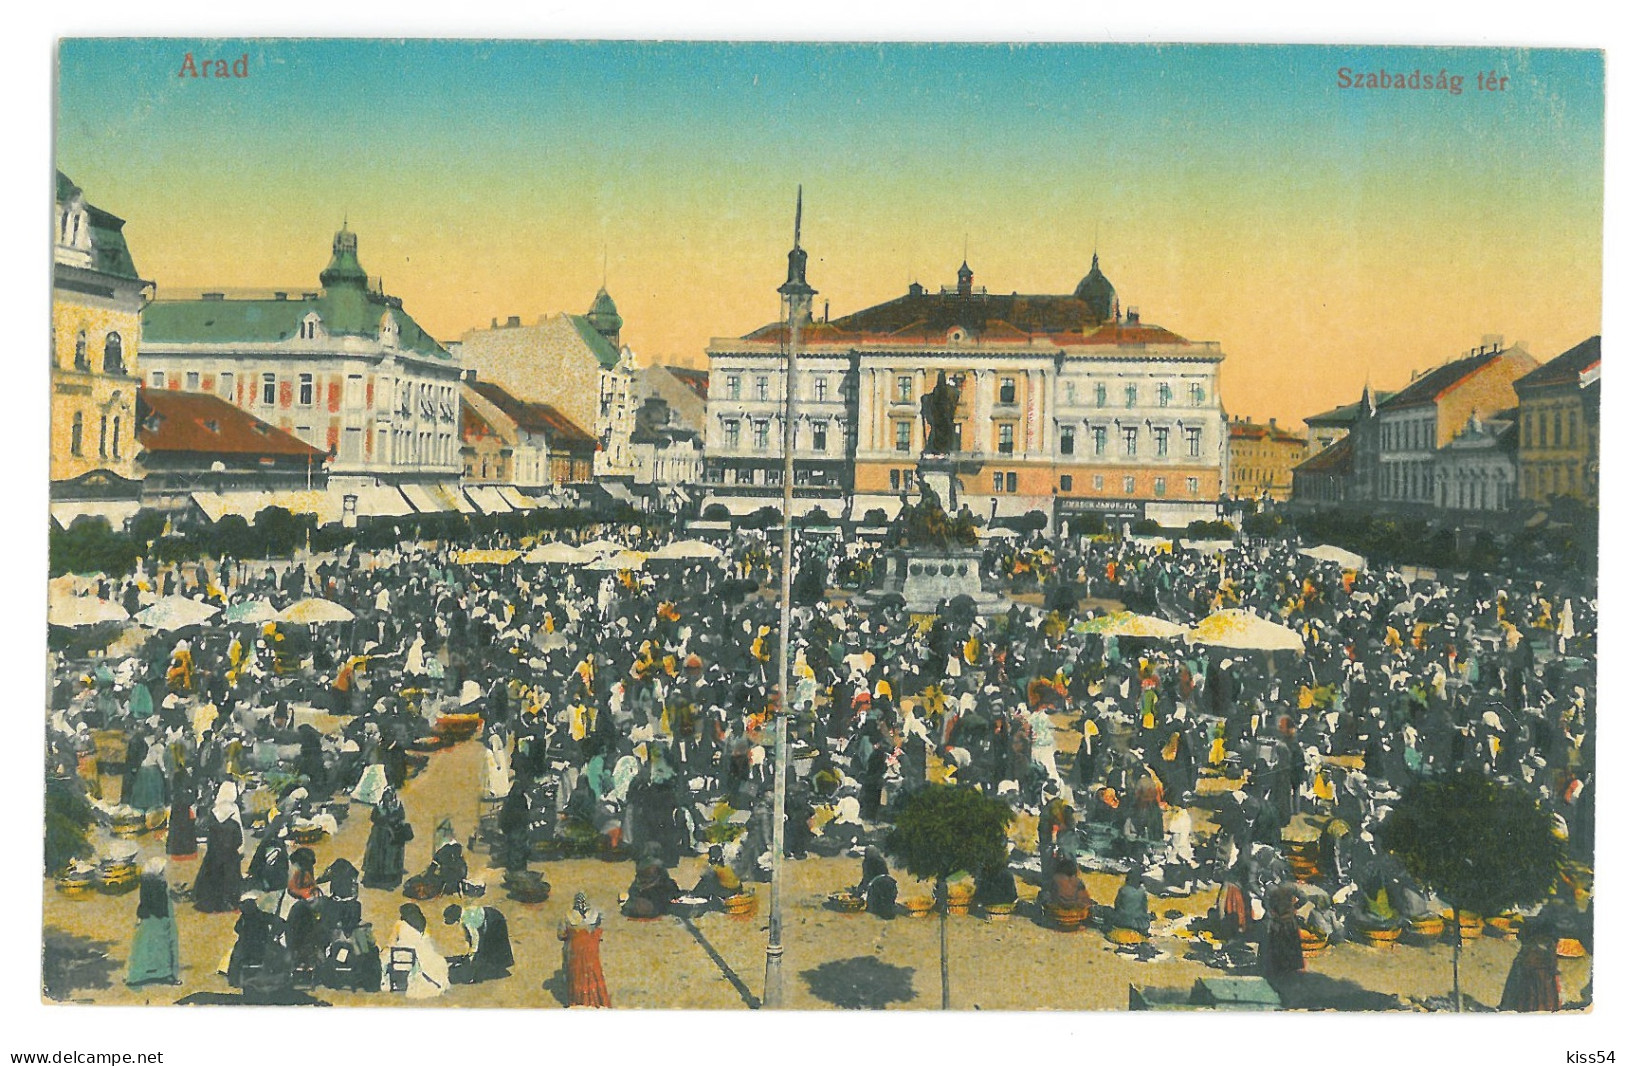 RO 09 - 16182 ARAD, Market, Romania - Old Postcard - Unused - Roemenië